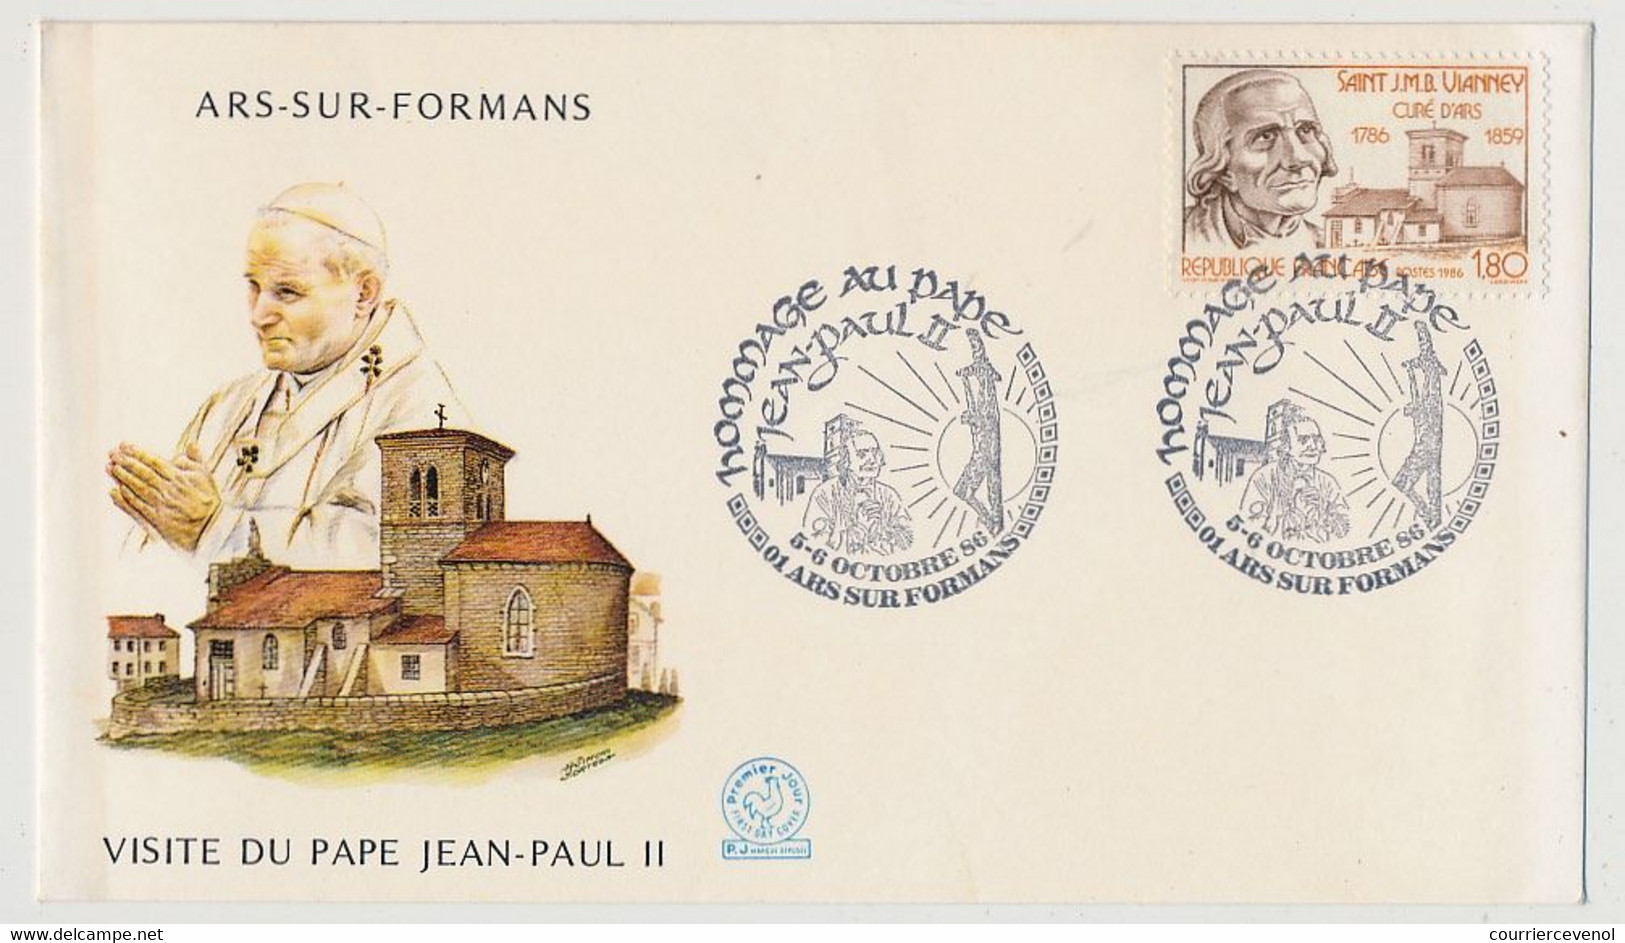 FRANCE - 6 documents "Visite du pape Jean Paul II" en France - 1986